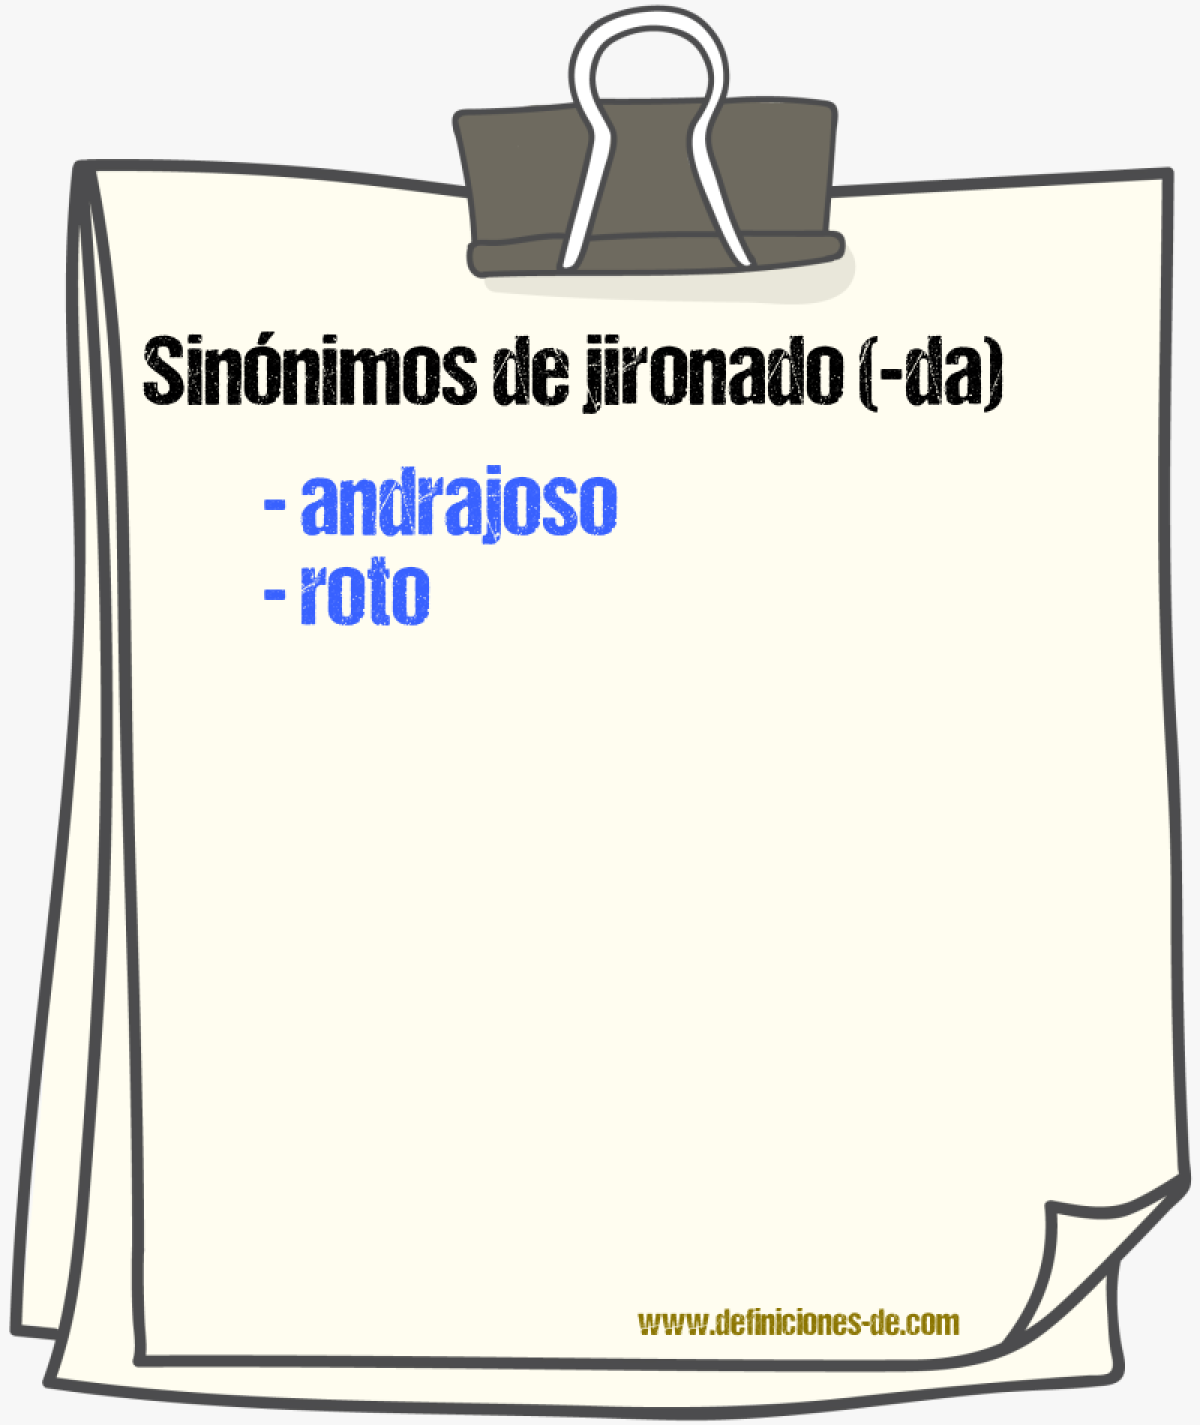 Sinónimos de jironado